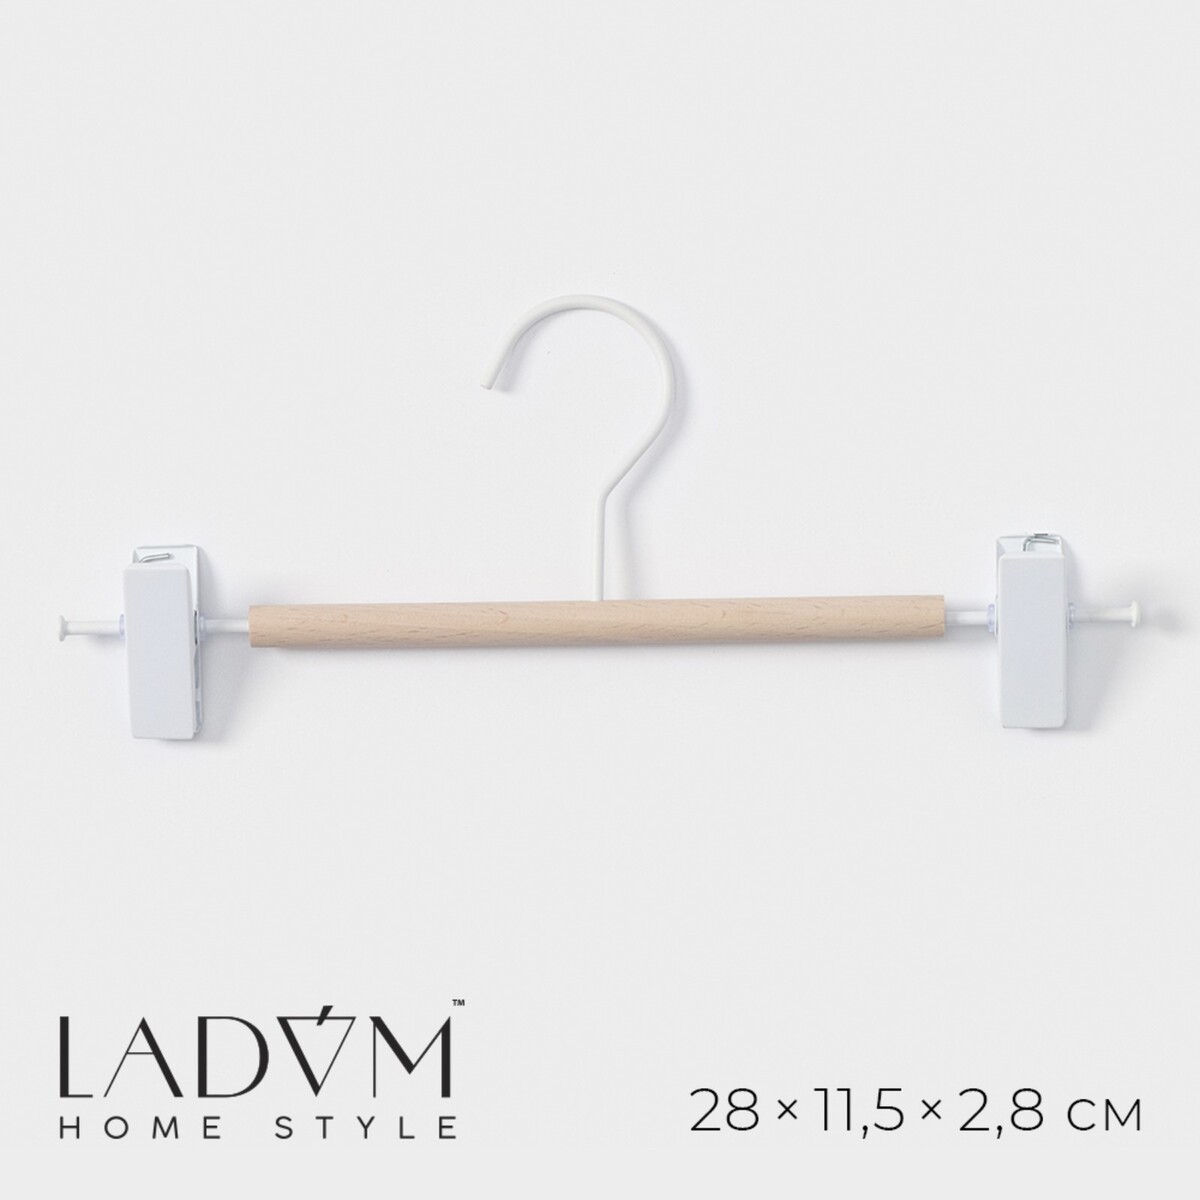 Вешалка для брюк и юбок ladо́m laconique, 28×11,5×2,8 см, цвет белый плечики вешалка с зажимами для юбок и брюк доляна 37×16 см белый